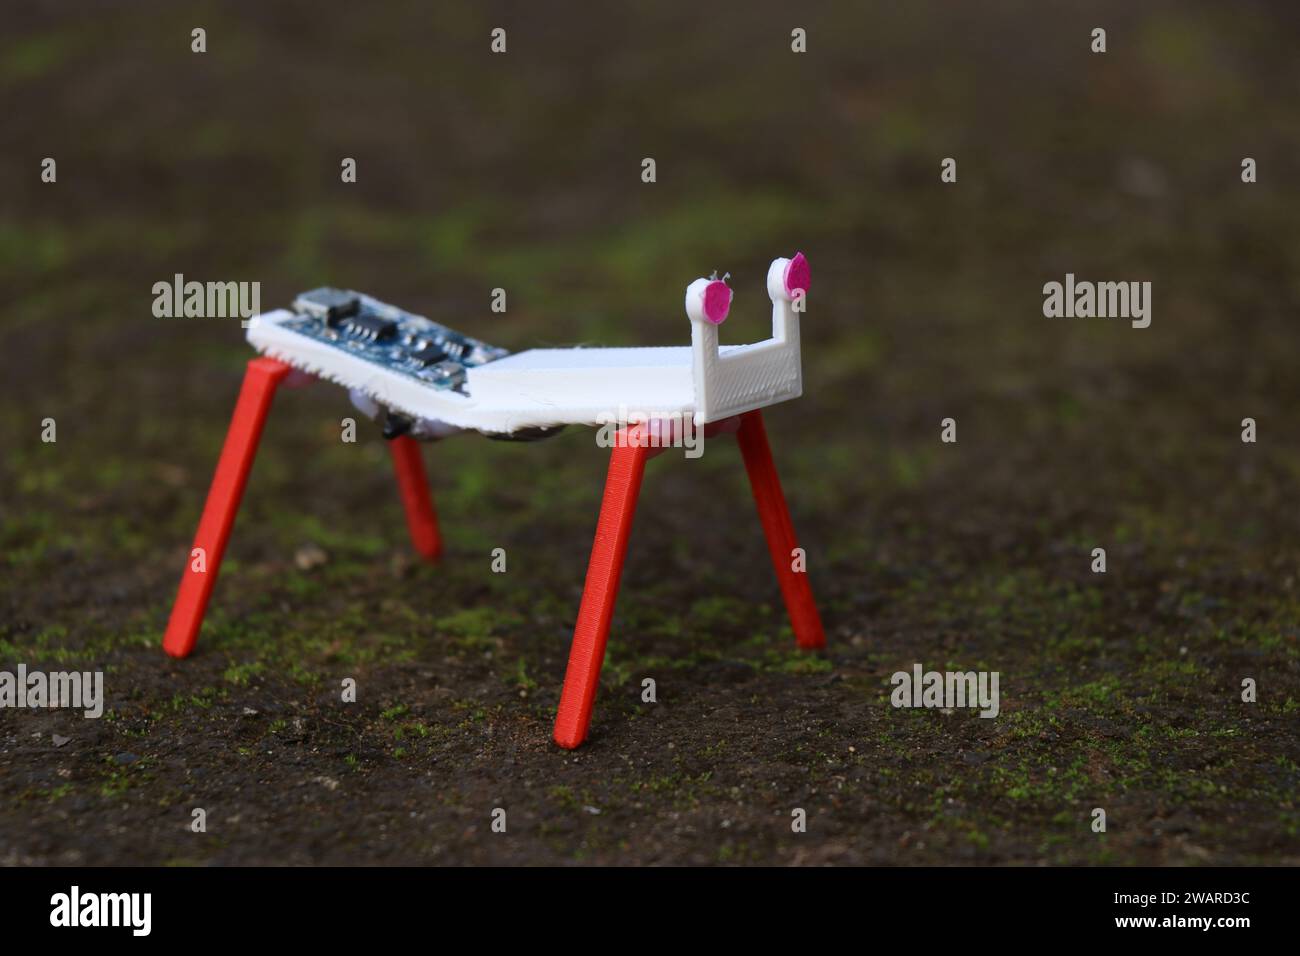 Robot semplice realizzato con parti stampate in 3d e alcuni componenti elettronici poggiati a terra Foto Stock